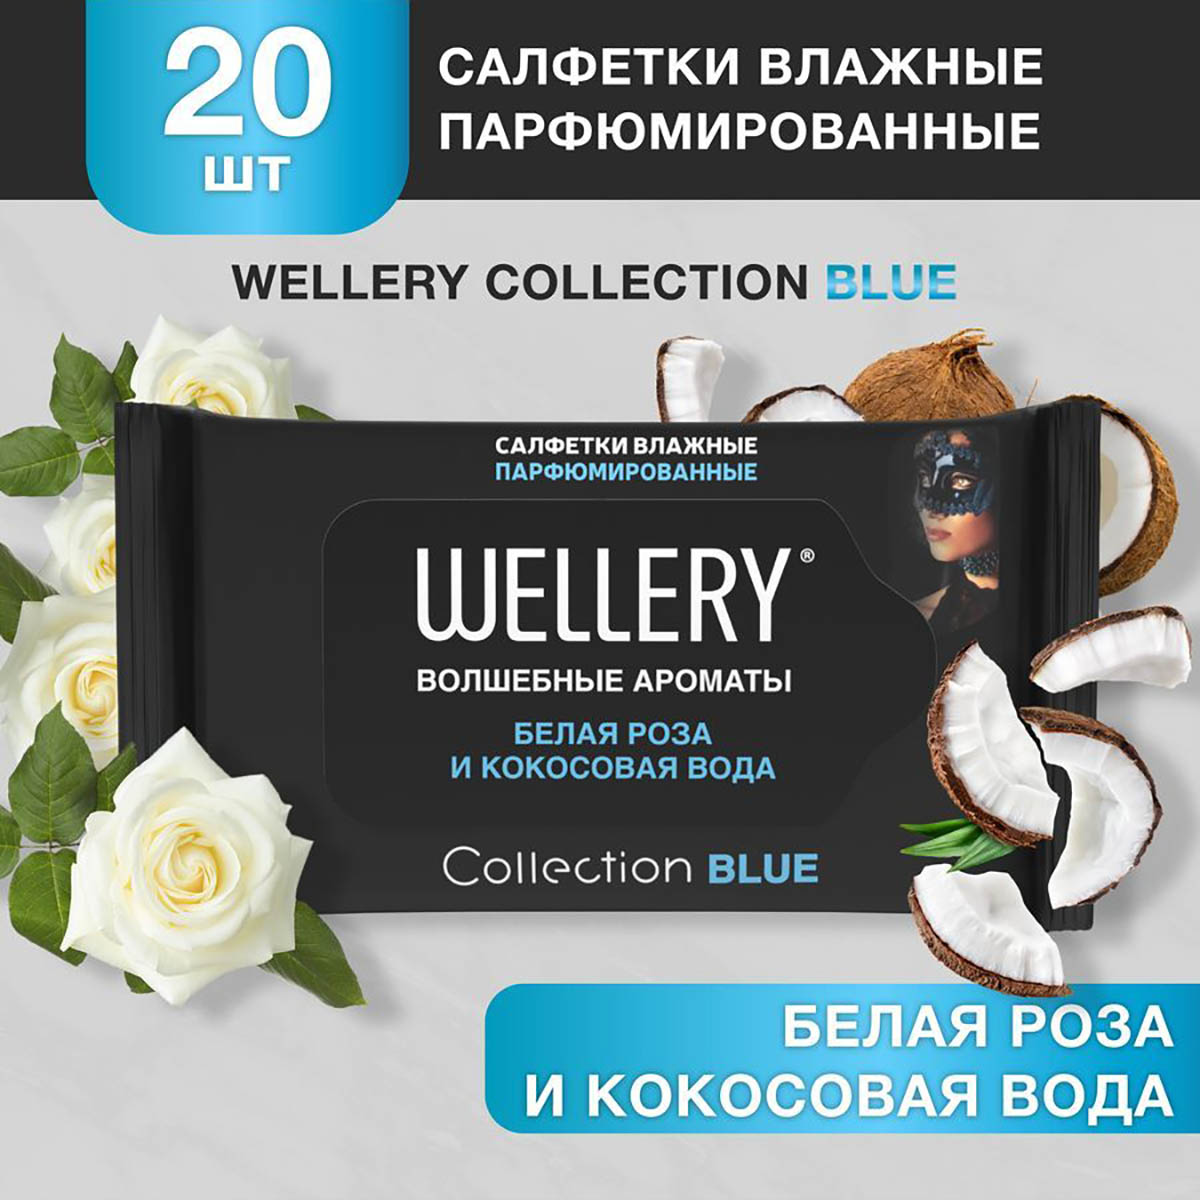 Салфетки влажные Wellery Collection Blue универсальные, белая роза, кокосовая вода 20 шт салфетки влажные эконом smart универсальные 60 шт